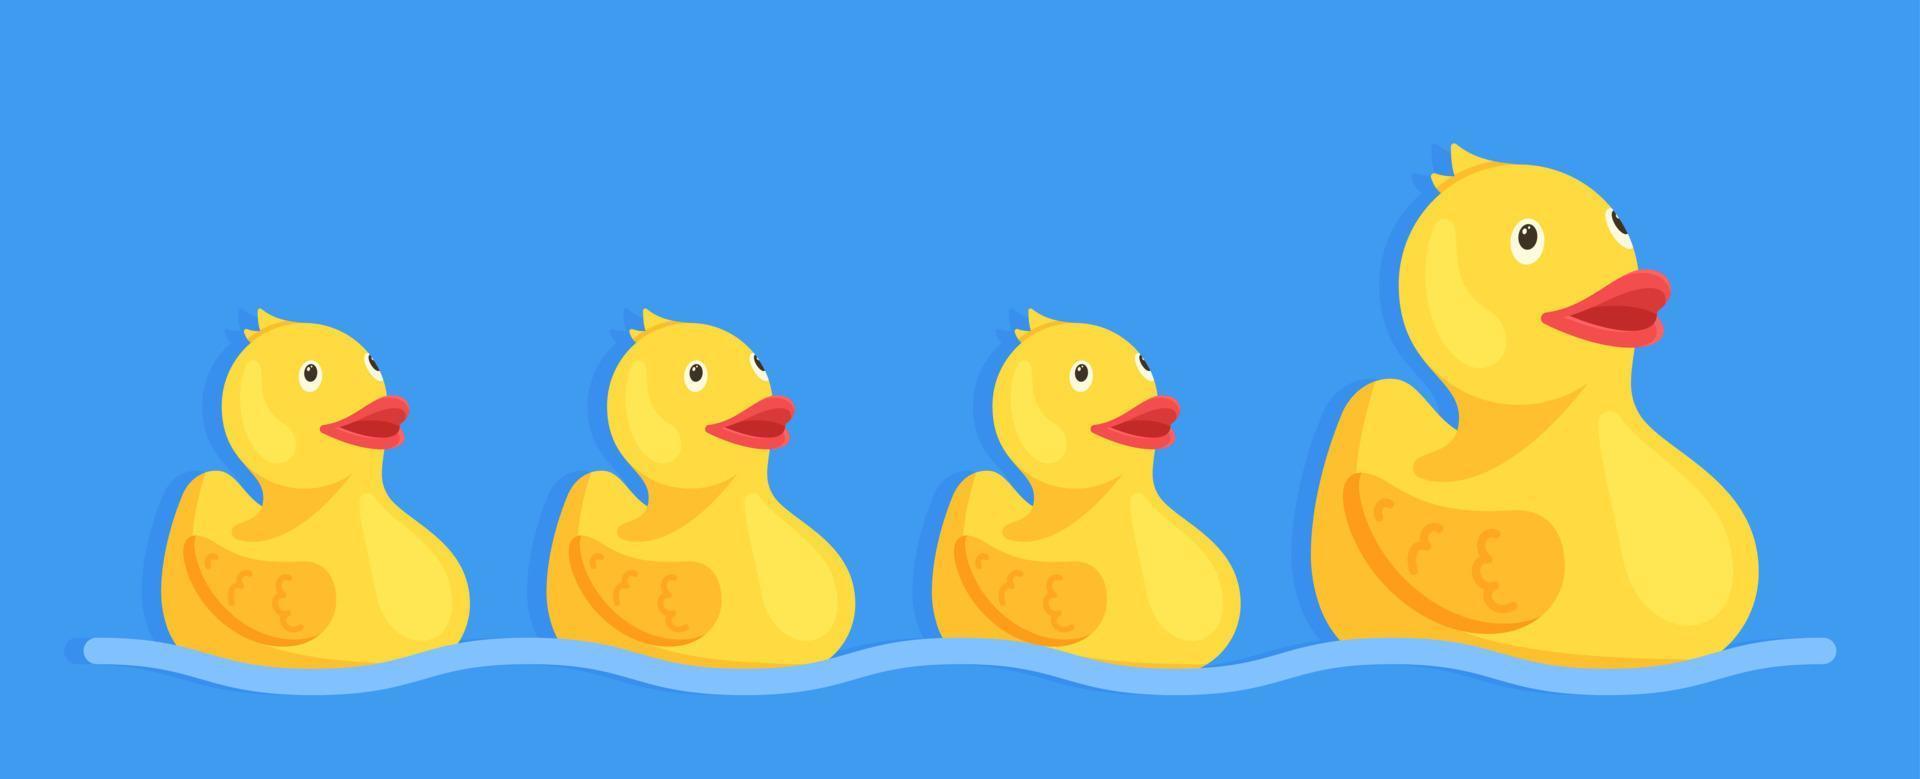 illustration vectorielle de canards en caoutchouc. canard en caoutchouc gonflable. jouet de canard jaune. vecteur